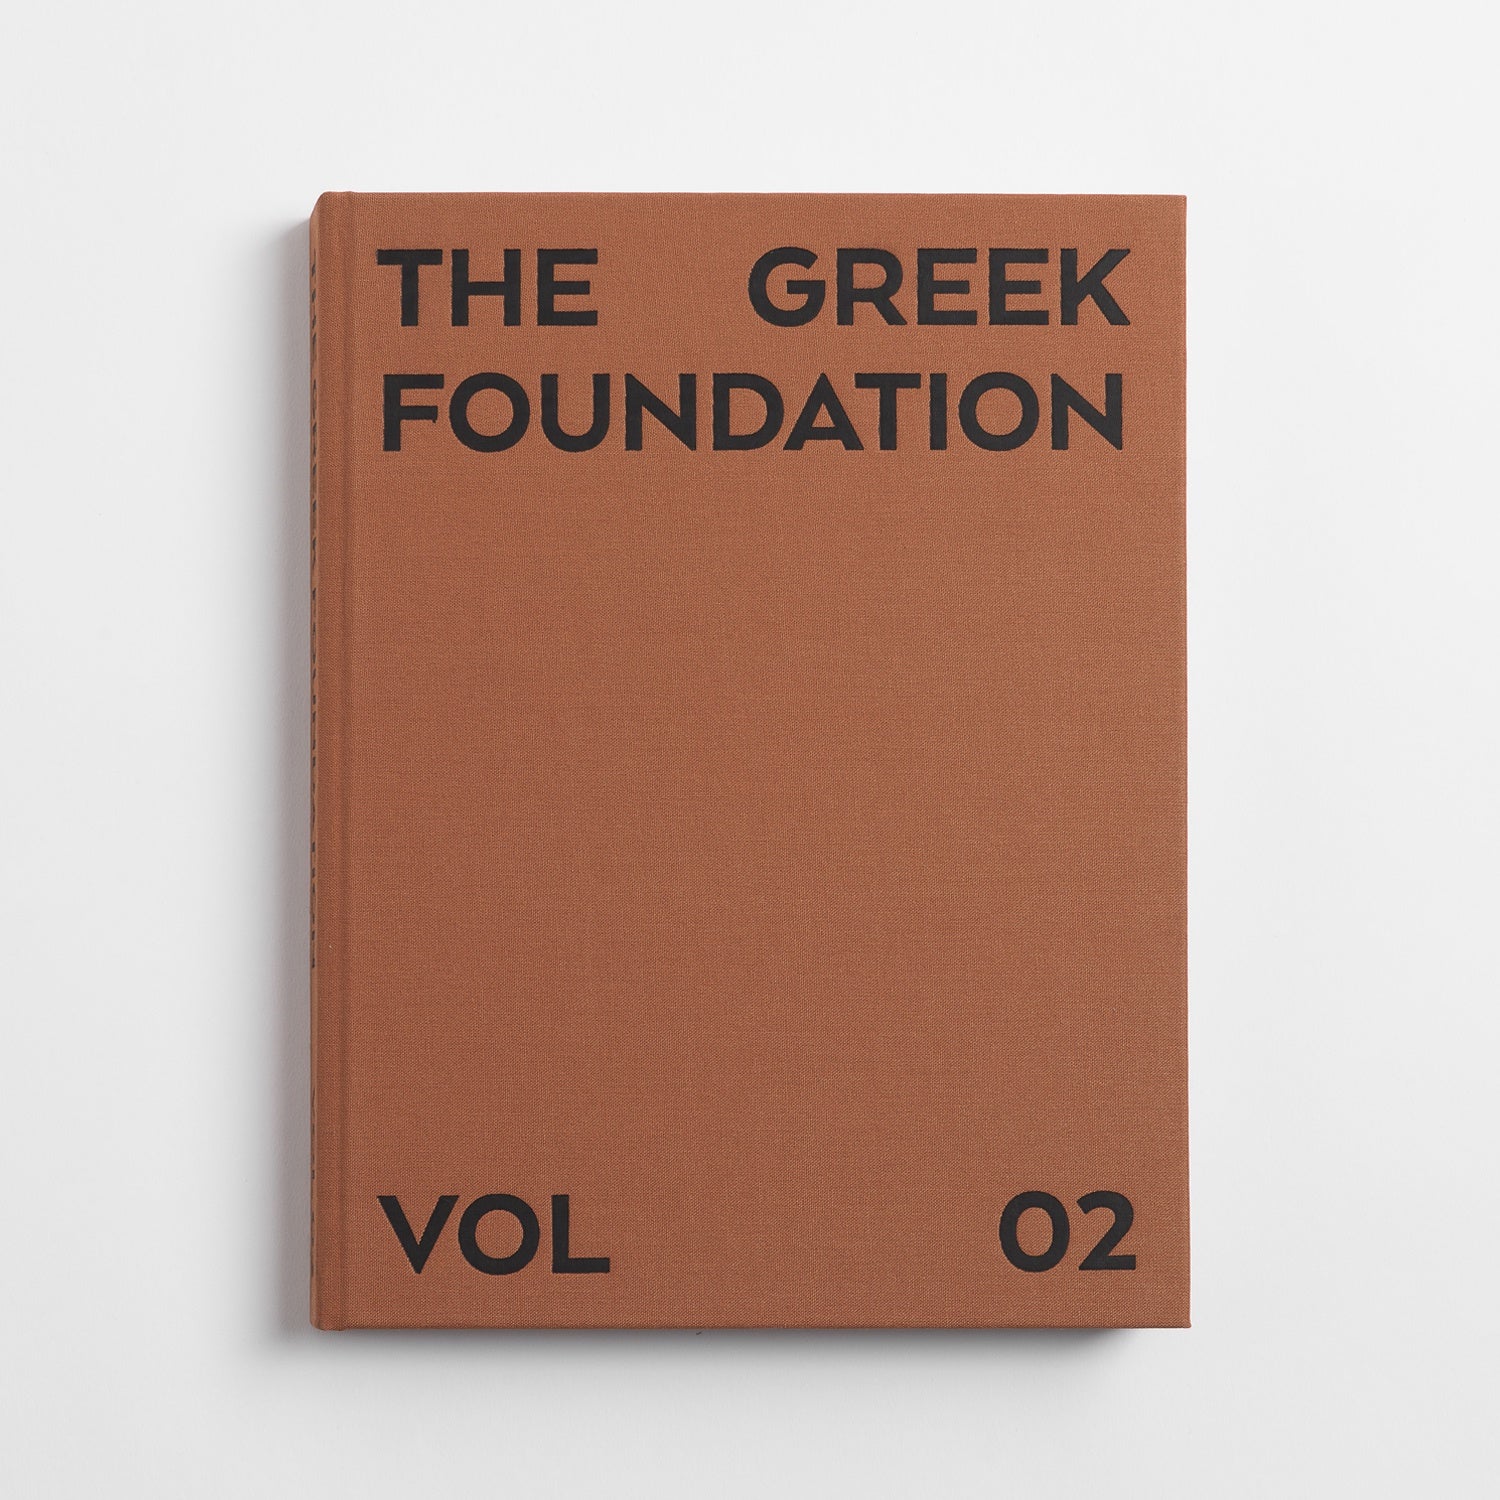 THE GREEK FOUNDATION VOL 02